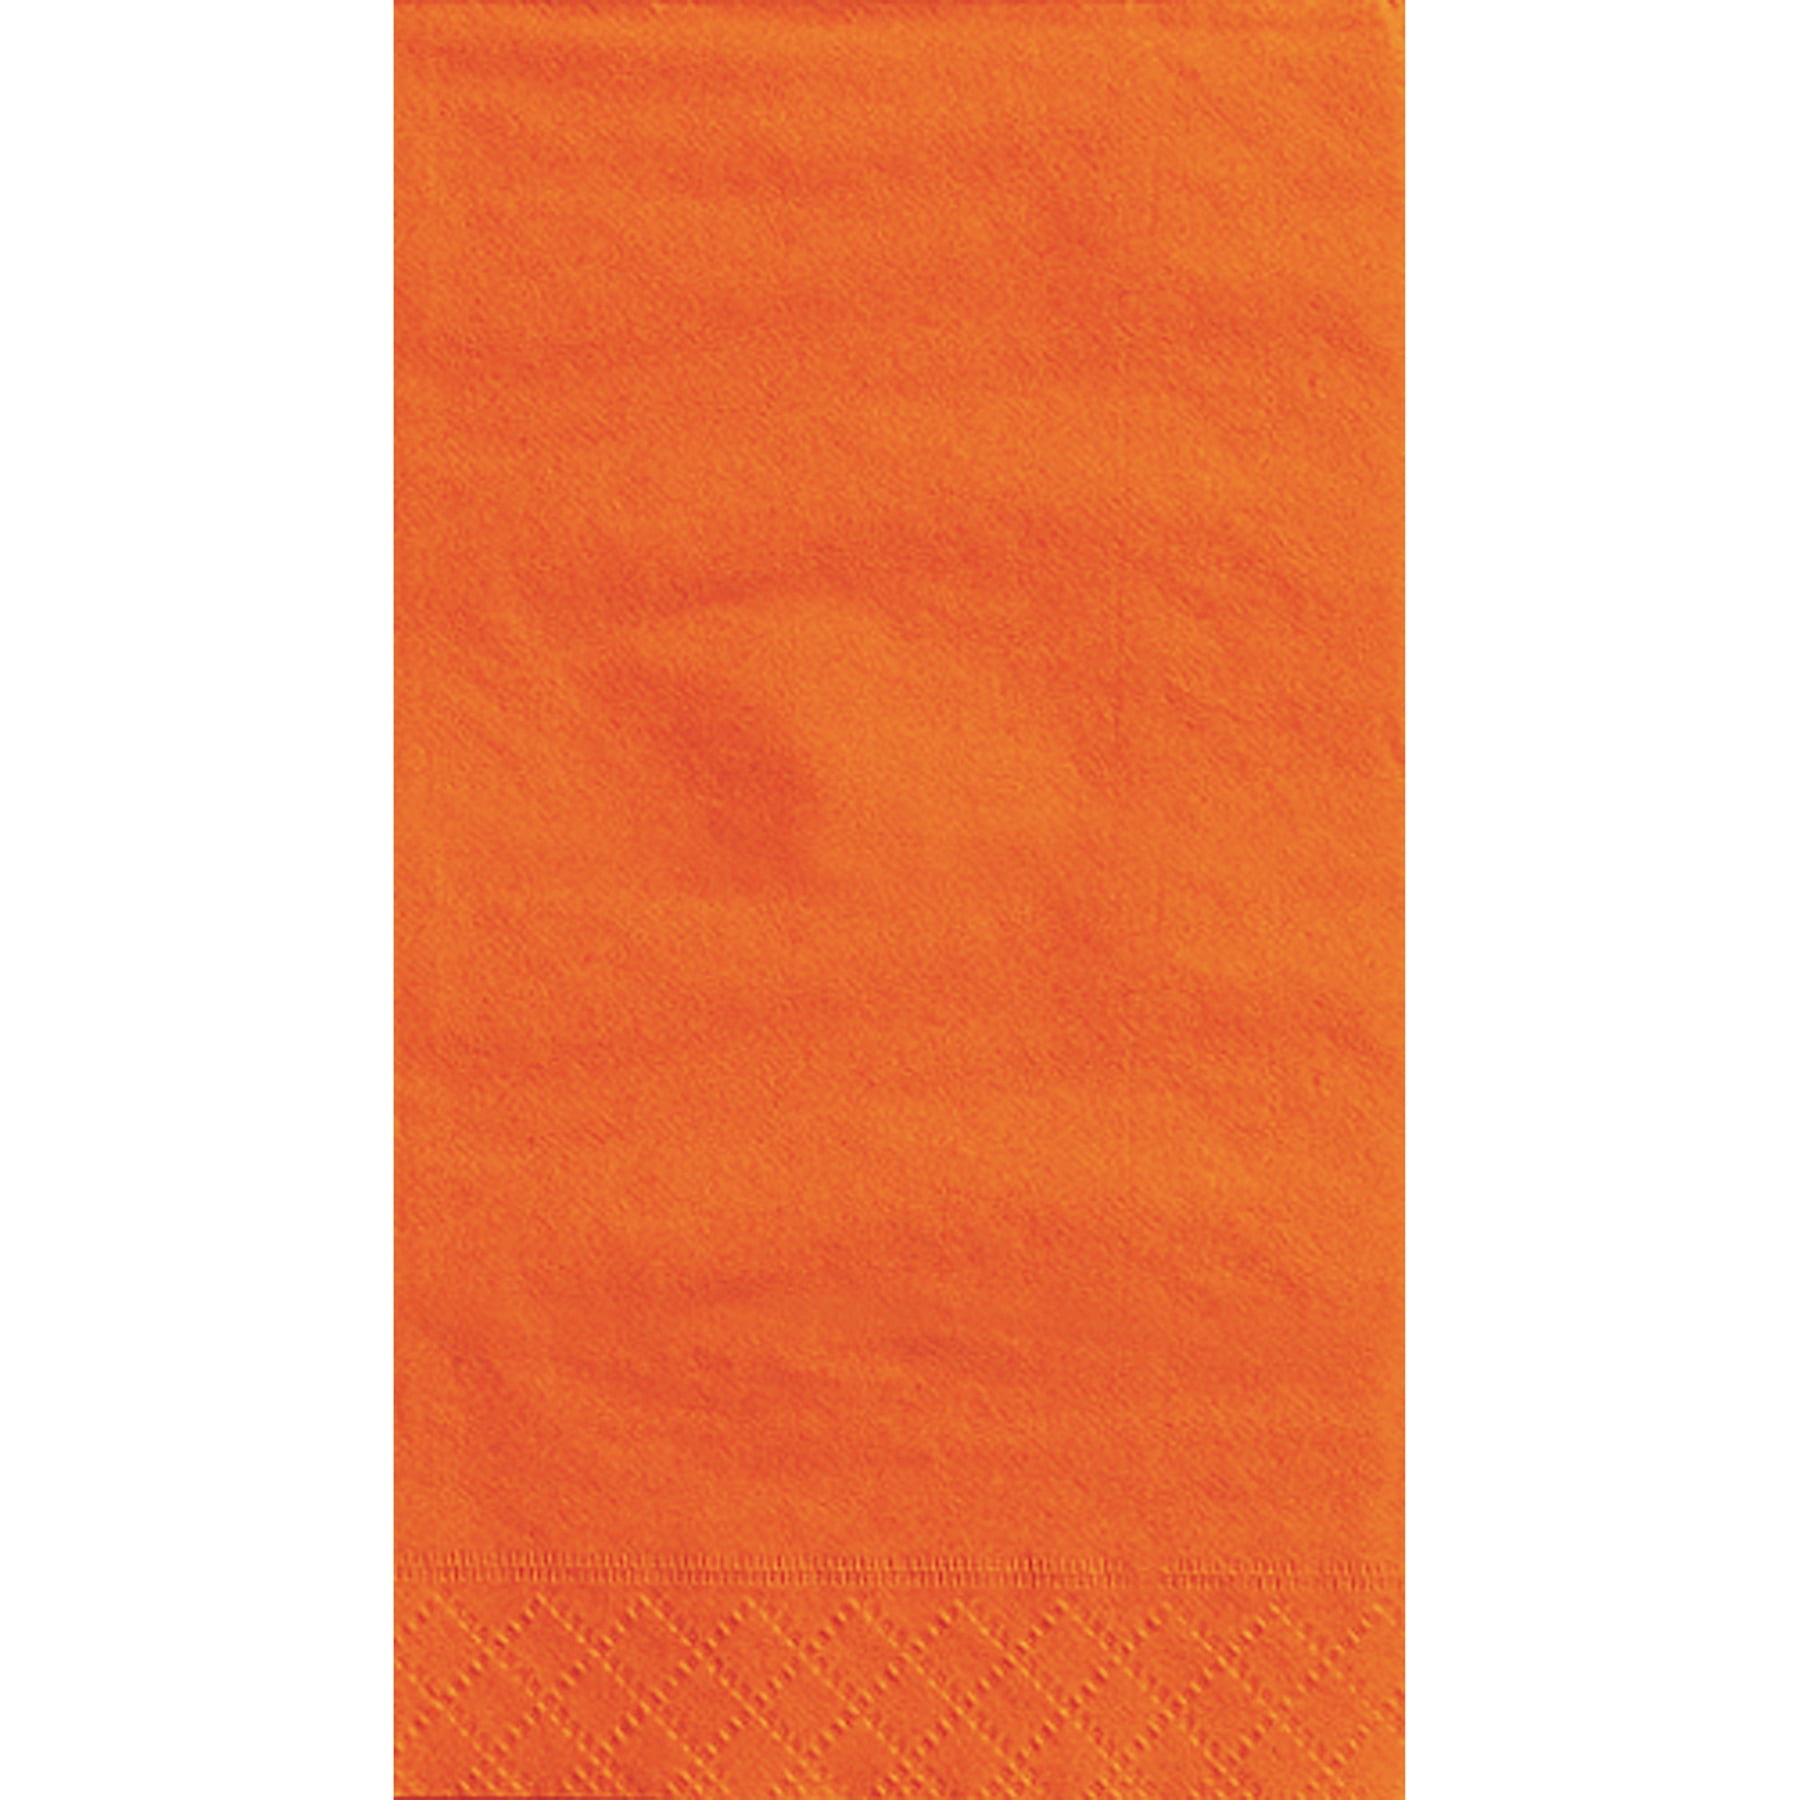 20ct Unique Orange Guest Napkins 7.75 x 4.5